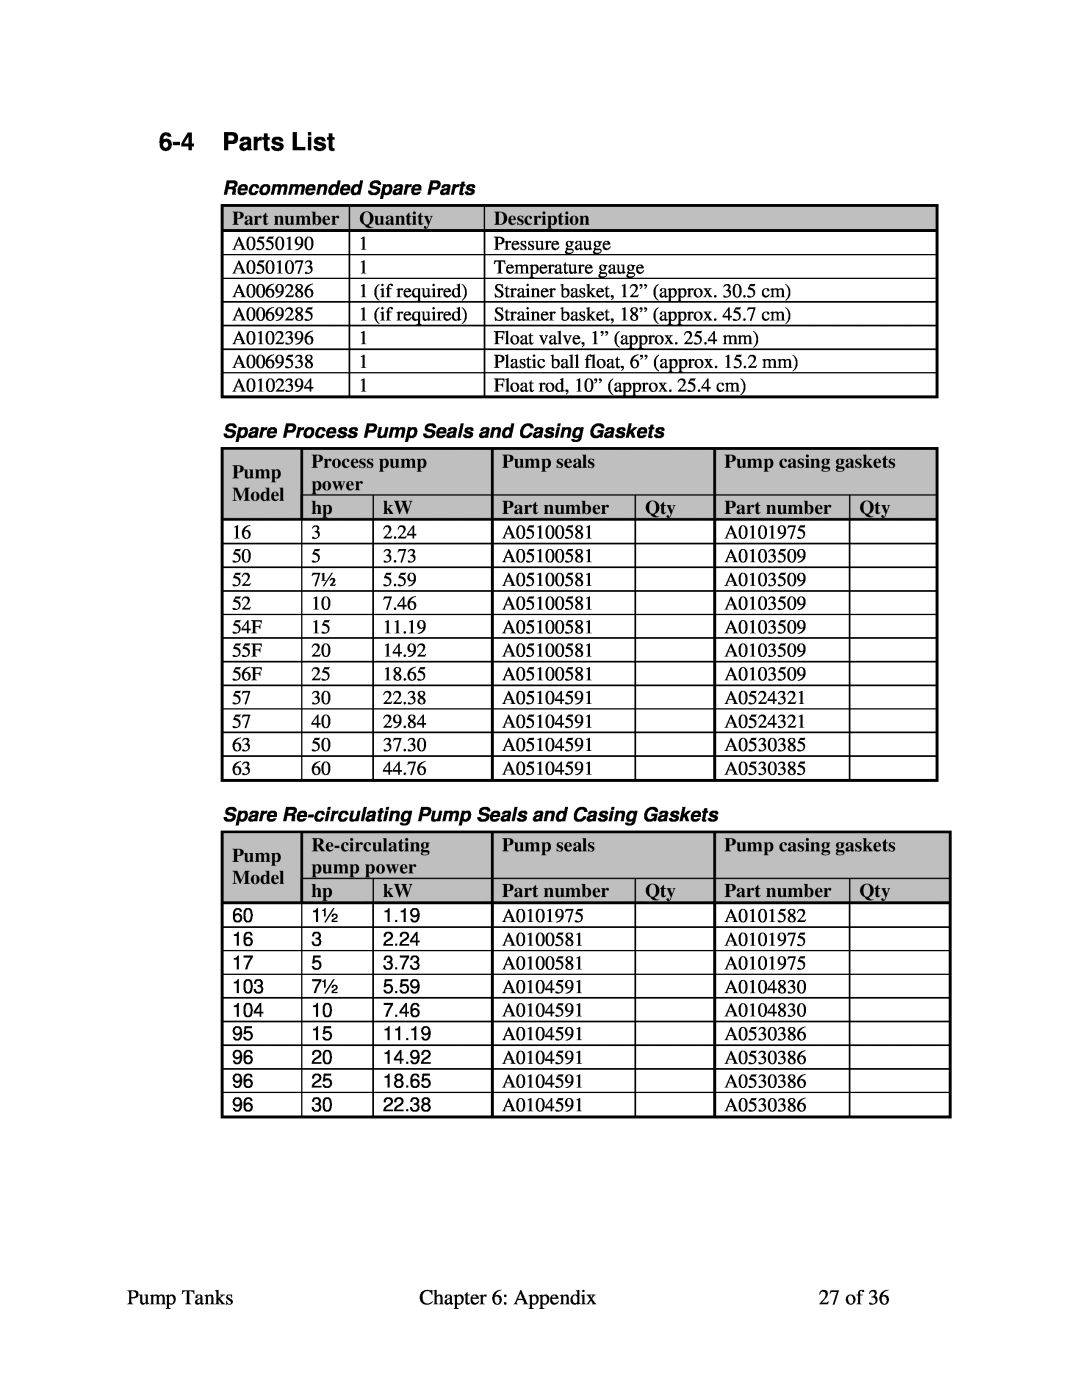 Sterling A0552321 Parts List, Recommended Spare Parts, Part number, Quantity, Description, Process pump, Pump seals 